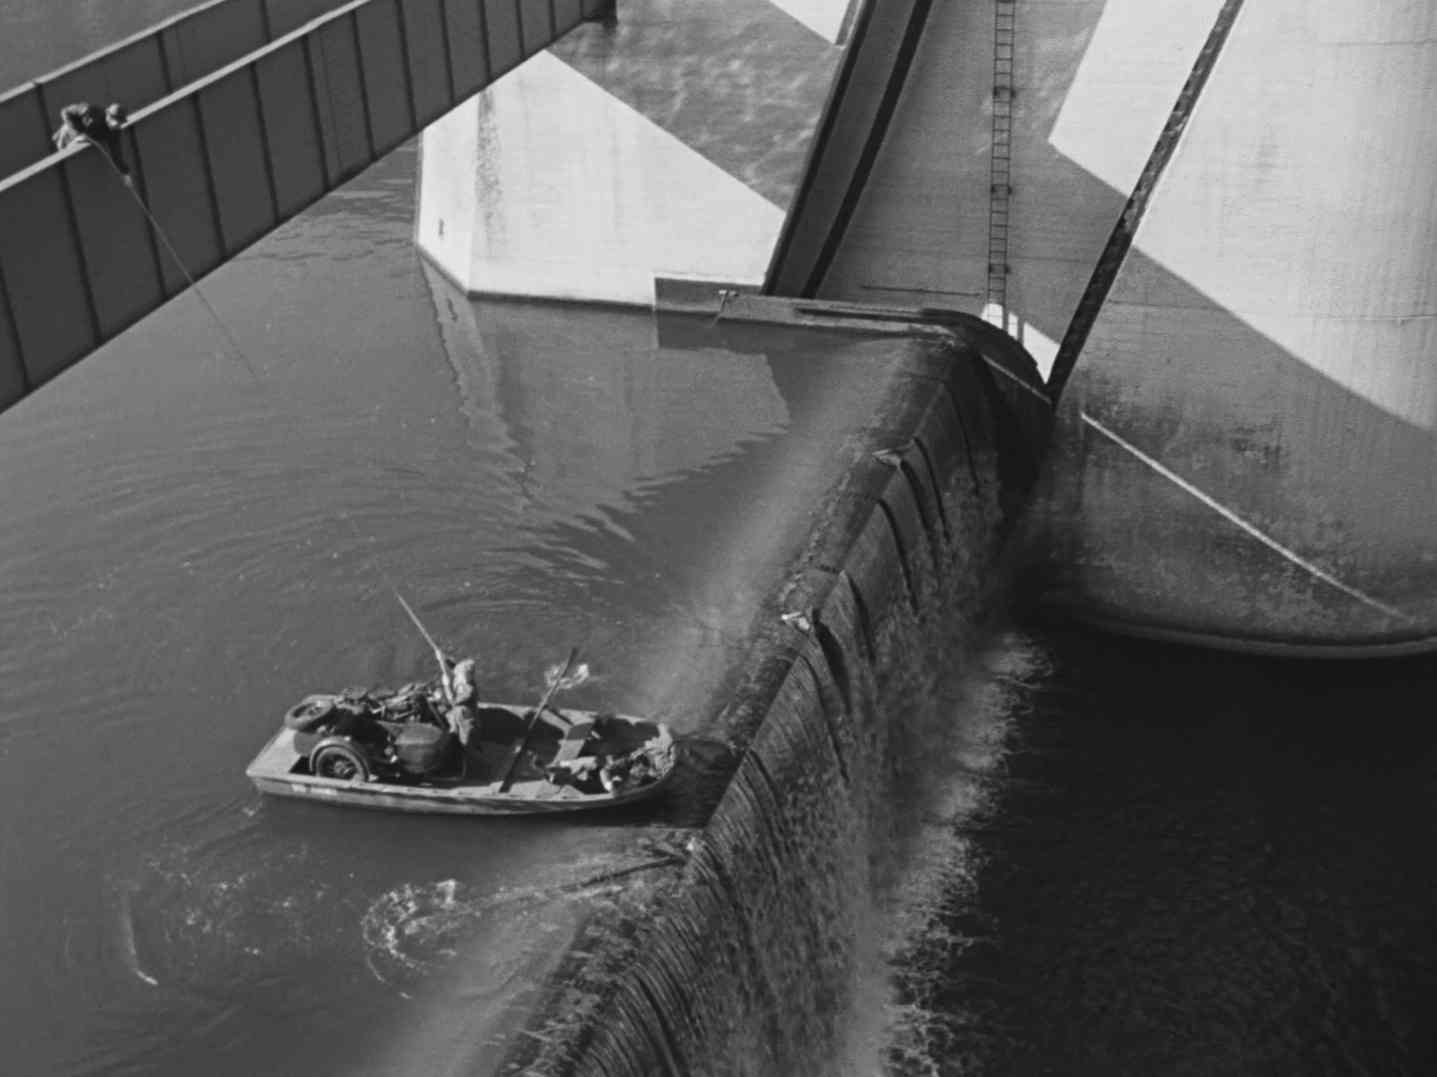 Schwarz-Weiß-Szene, in der sich ein kleines, flaches Boot kurz vor dem Abgrund an einem Wehr befindet; von einer Brücke hat jemand ein Rettungsseil geworfen, das ein Bootspassagier gerade strafft.